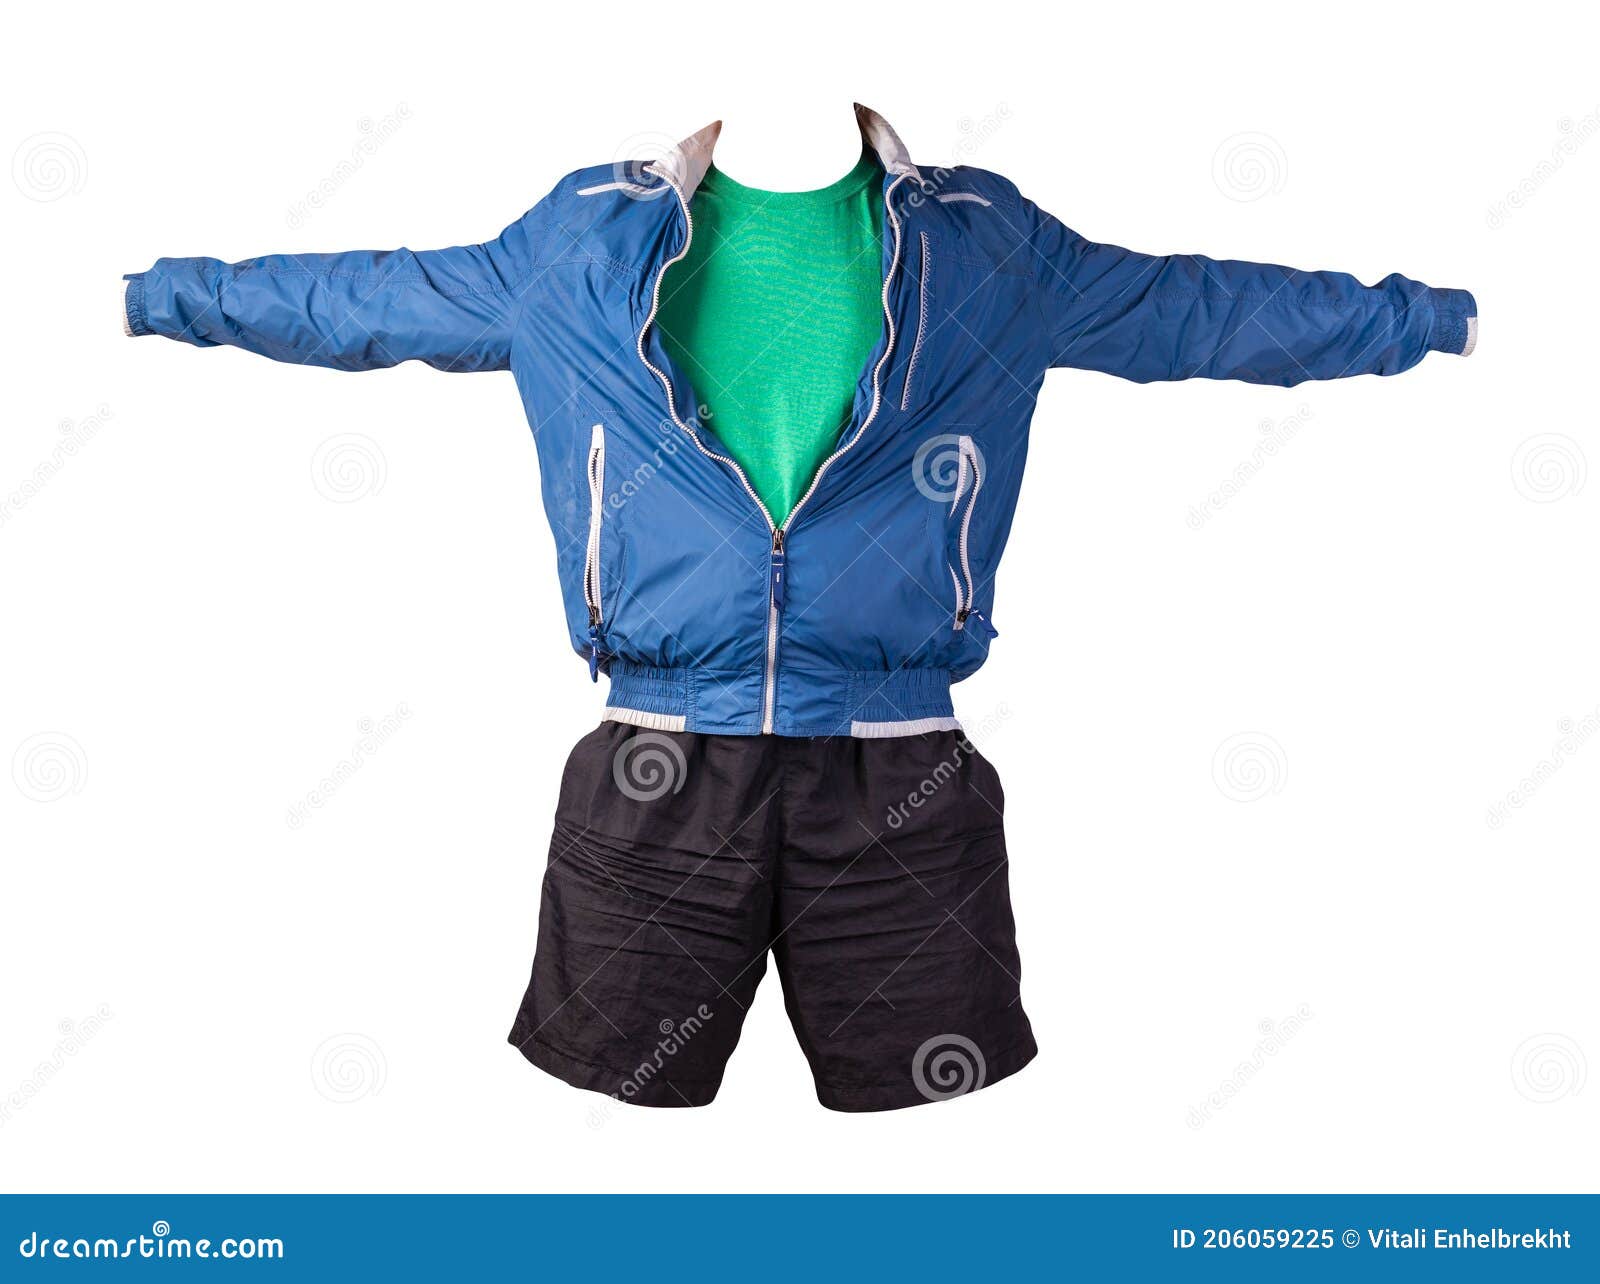 windbreaker jacket and shorts